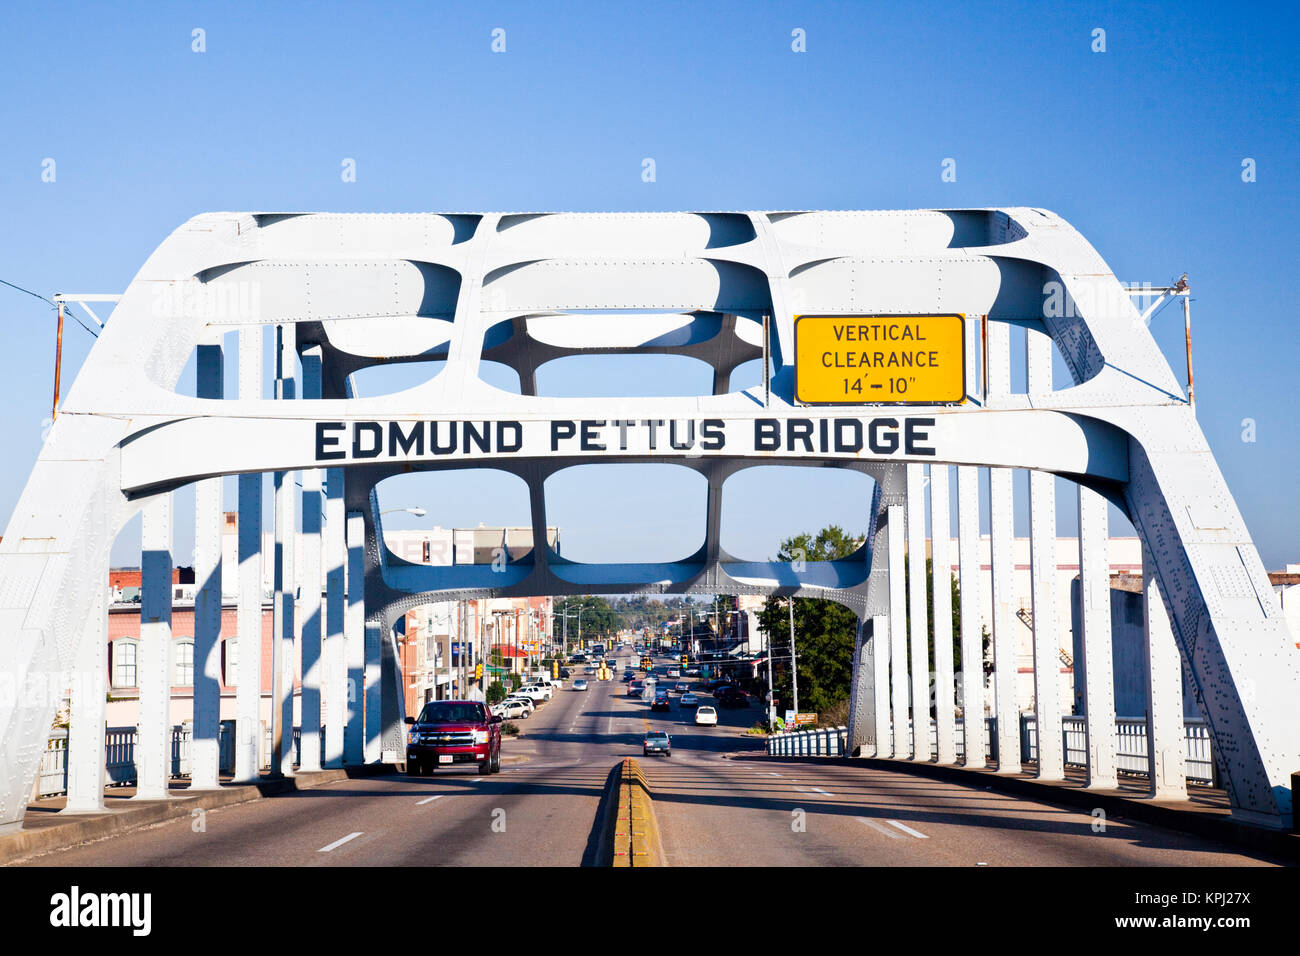 USA, Ohio, Selma. Edmund Pettus Bridge, site de la début de la Selma mars pendant la lutte pour les droits civiques des Afro-Américains. Banque D'Images